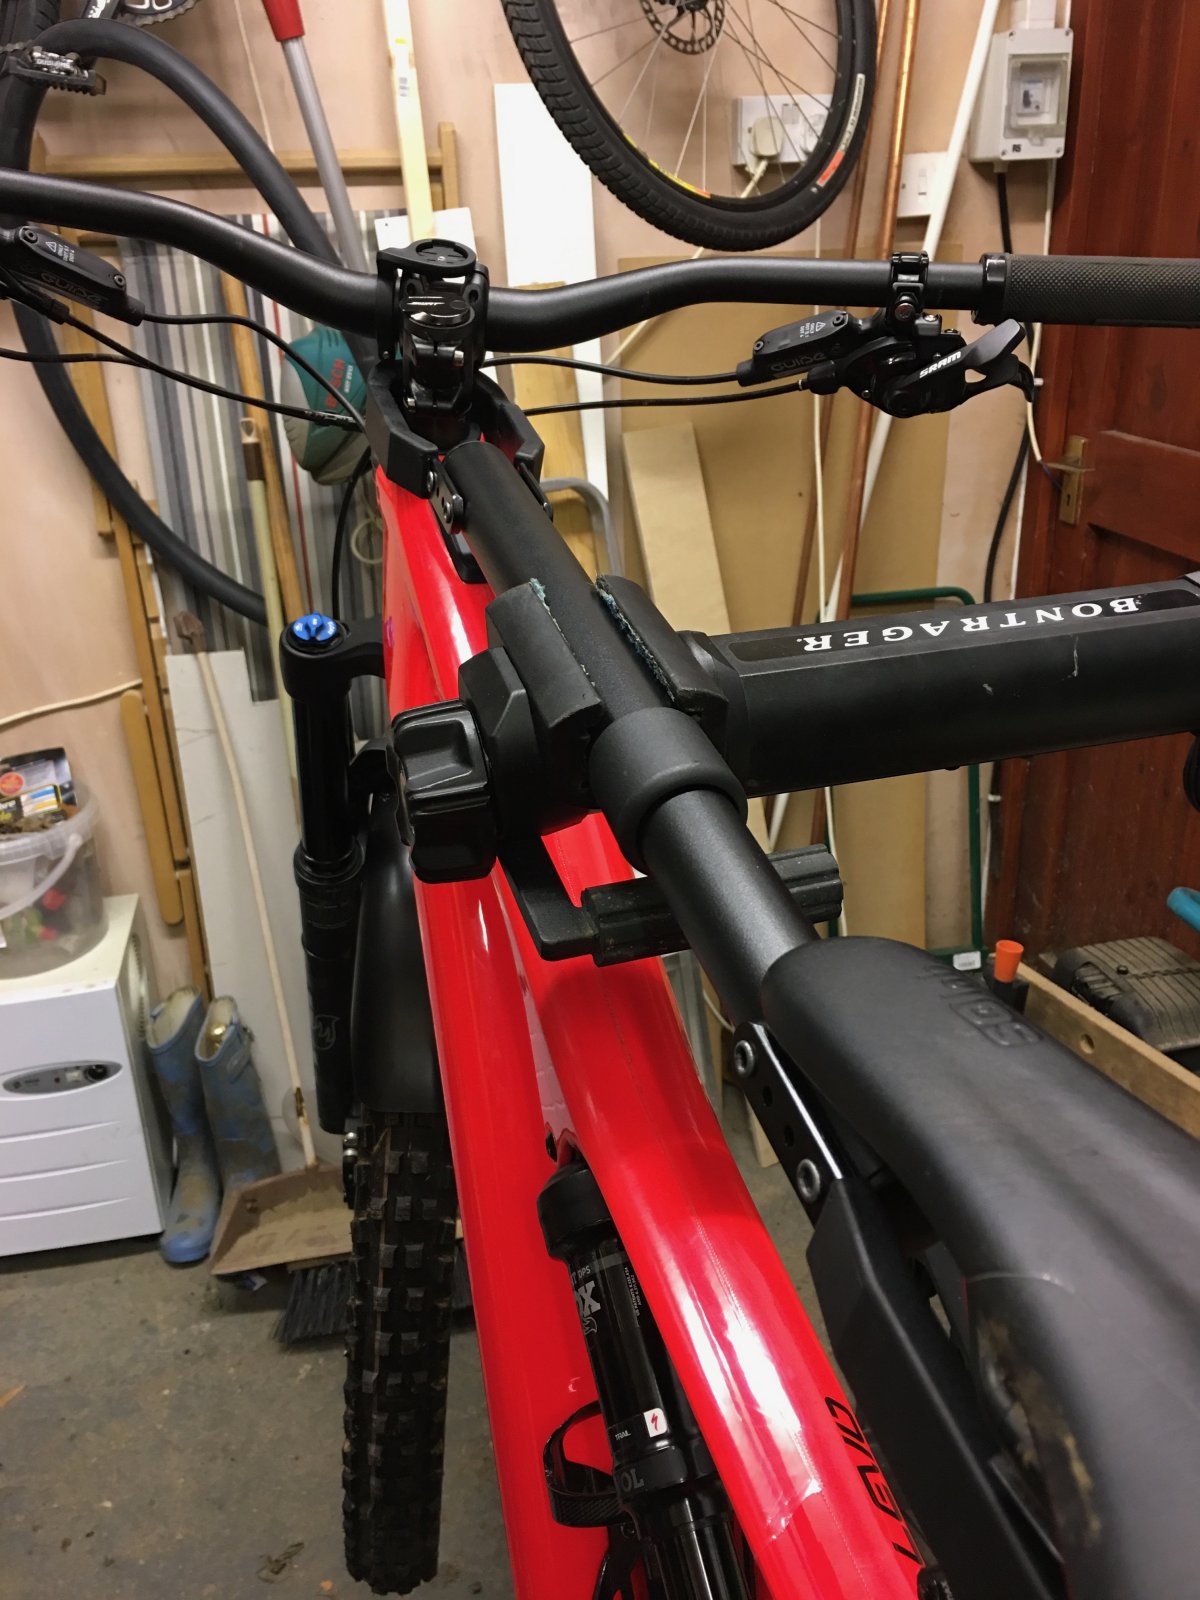 False cross bar for mounting bike on 